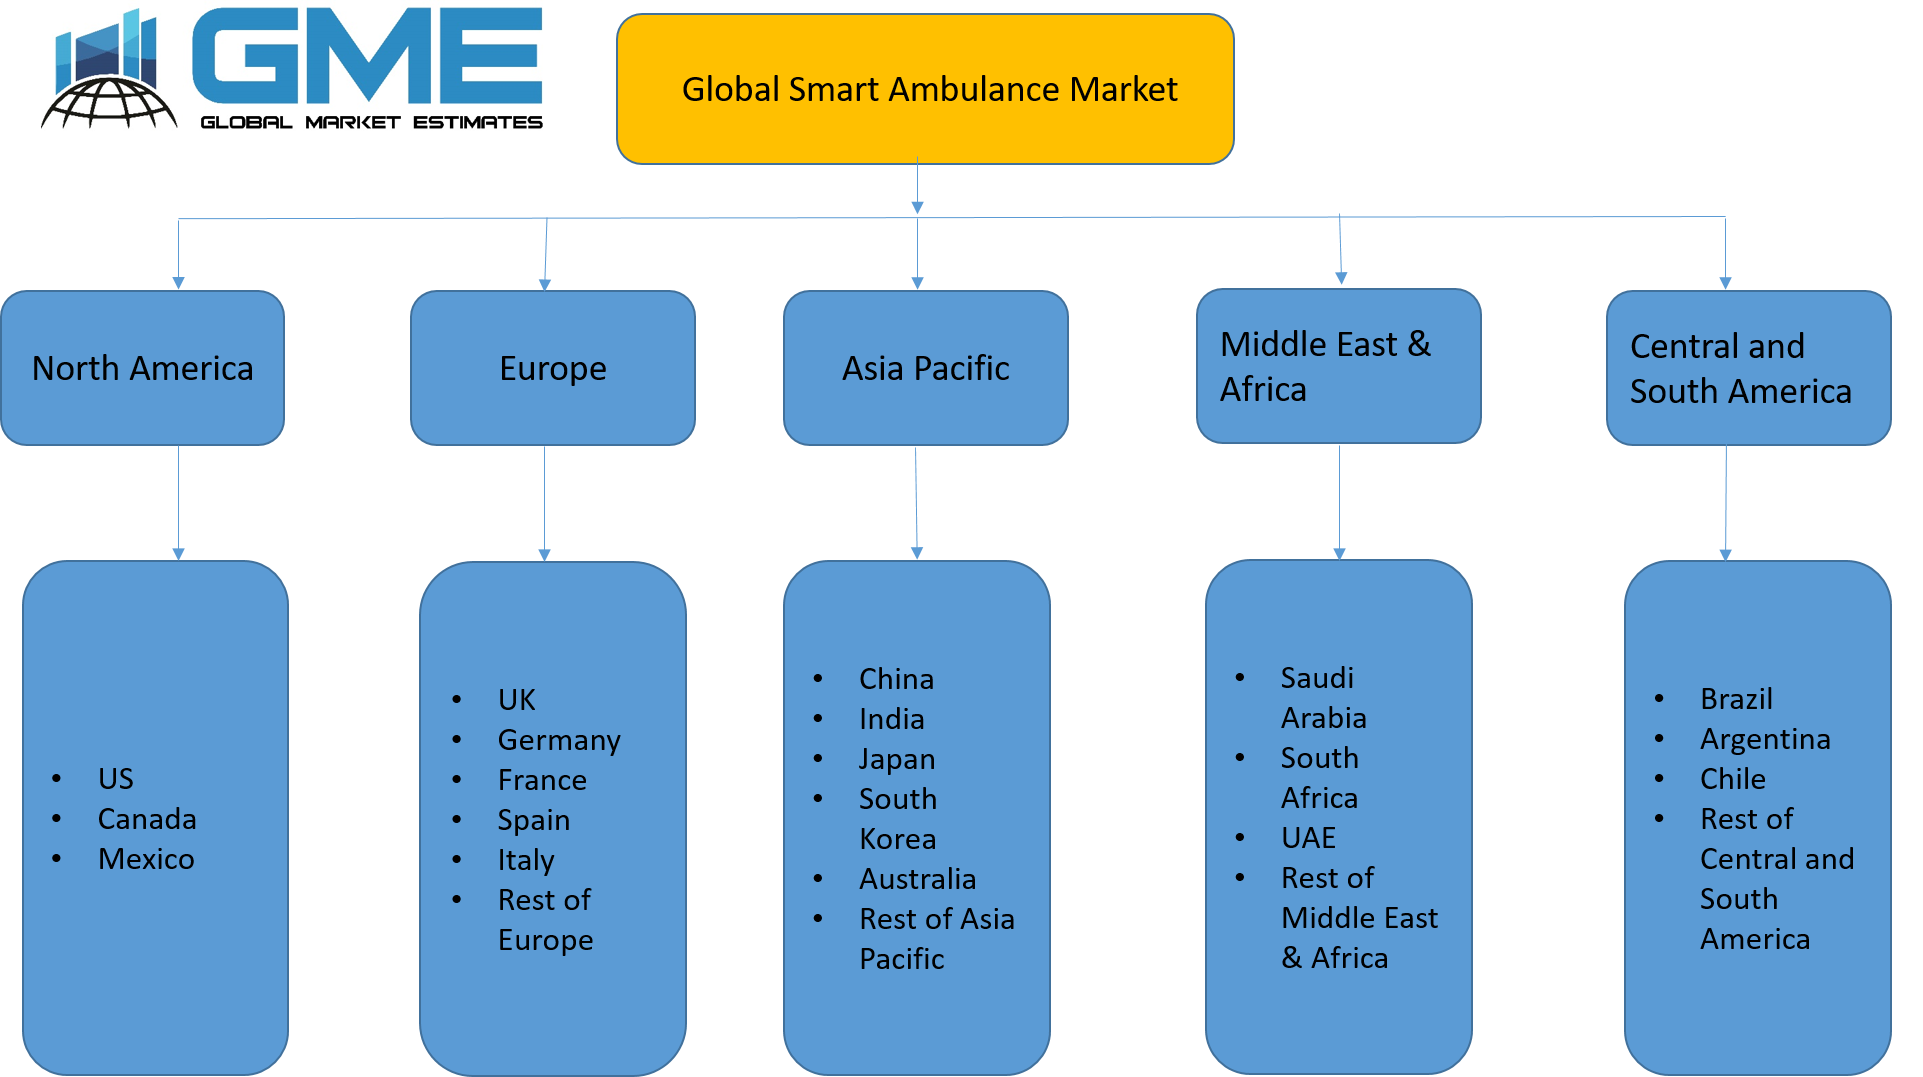 Global Smart Ambulance Market Segmentation